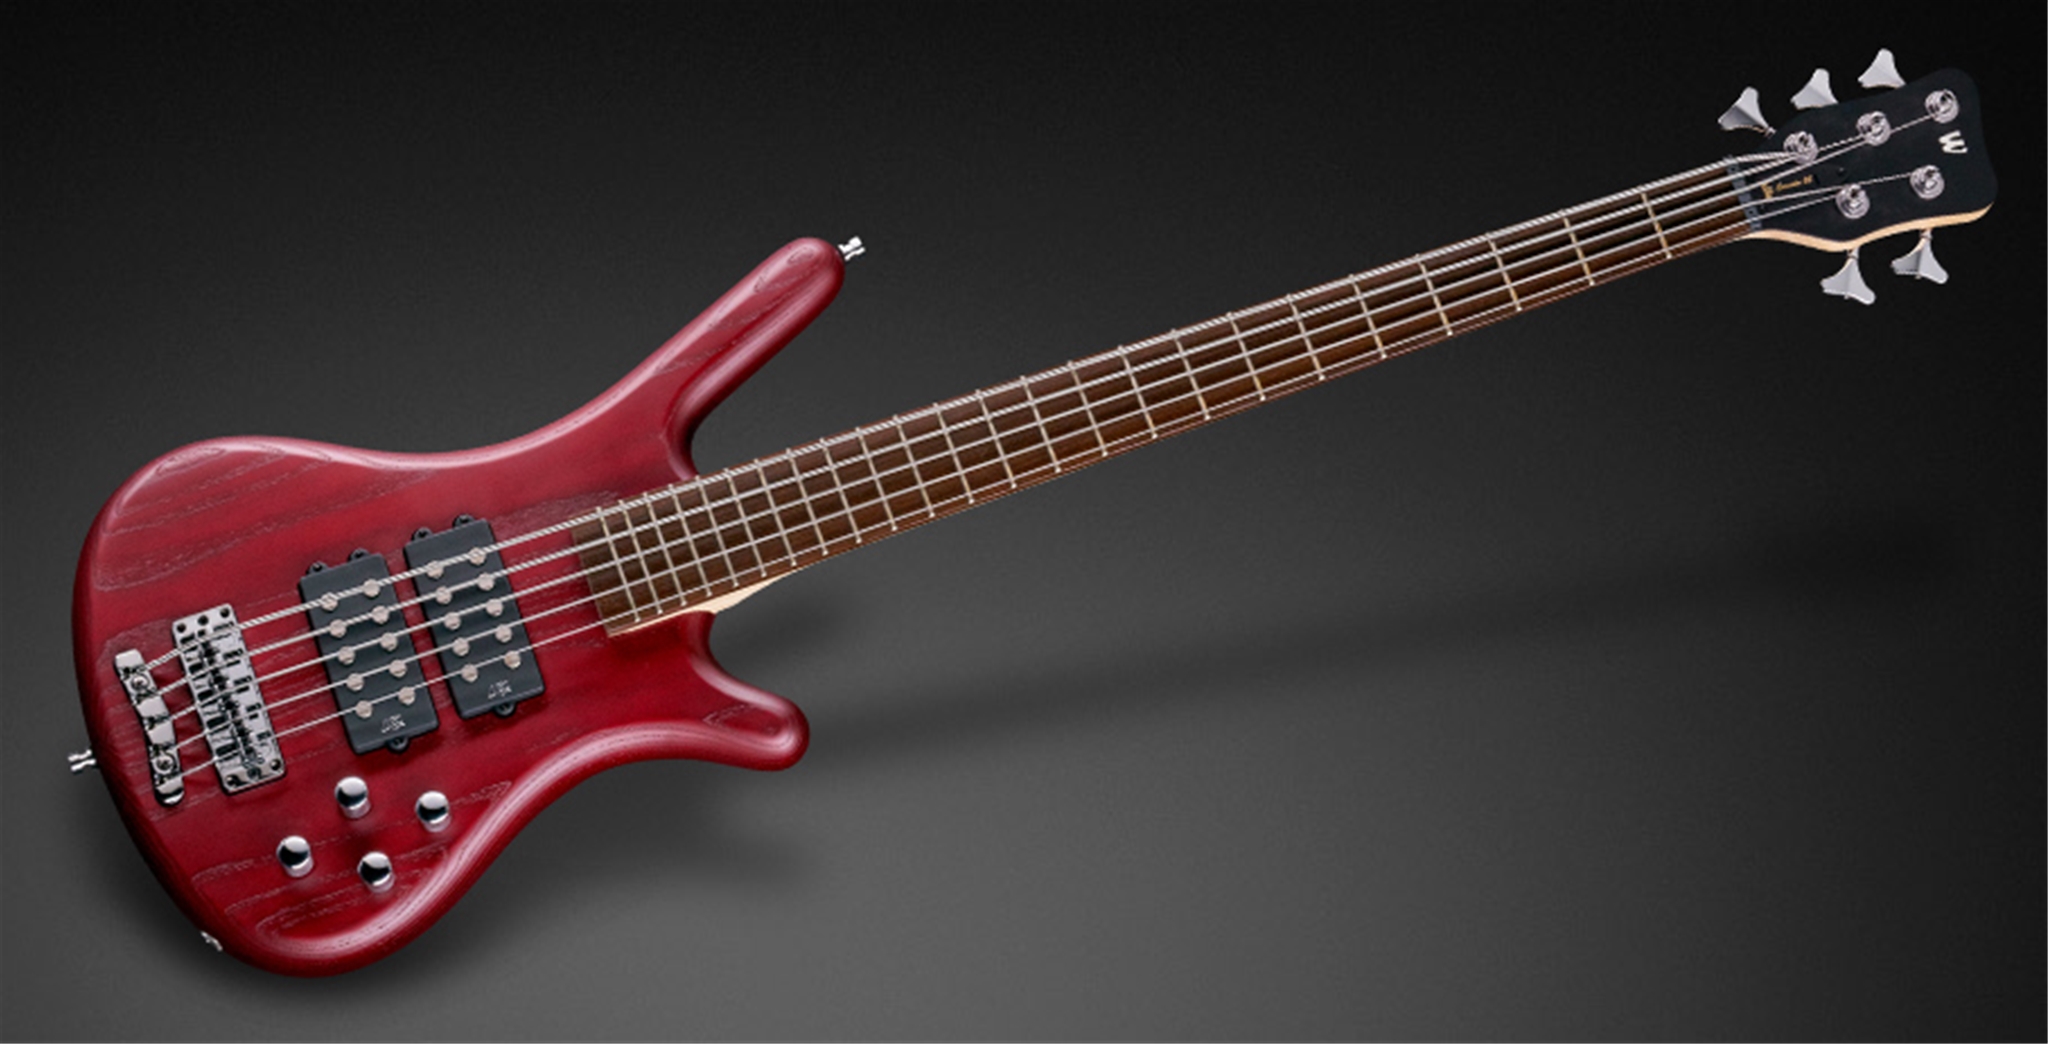 Warwick Rockbass Corvette SS-5 Burgundy Red Trans Satin 5-String Electric Bass Guitar  